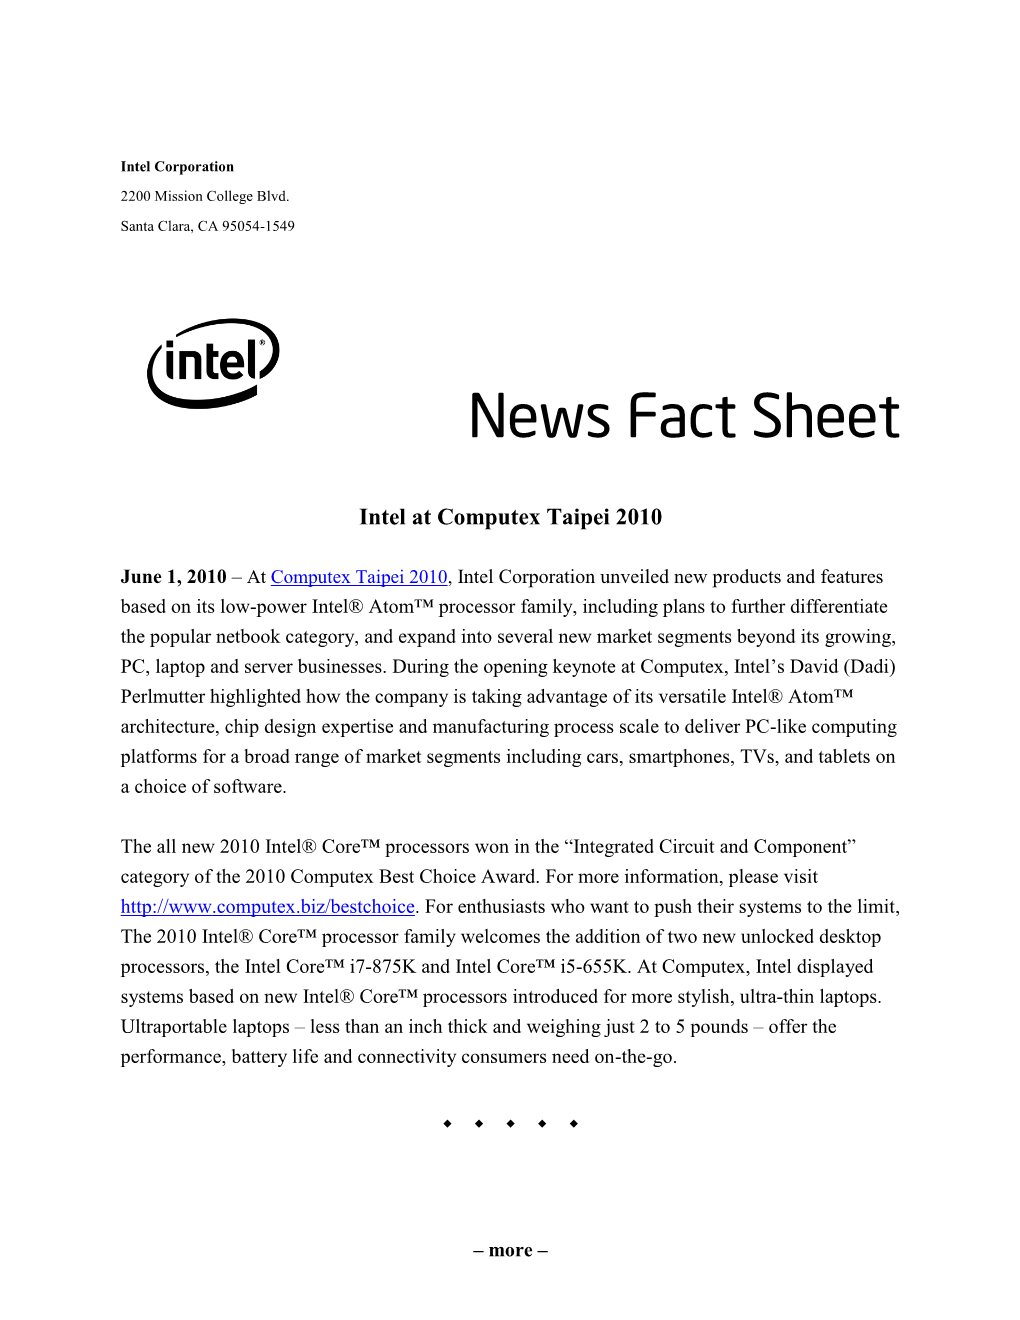 Fact Sheet: Intel at Computex Taipei 2010